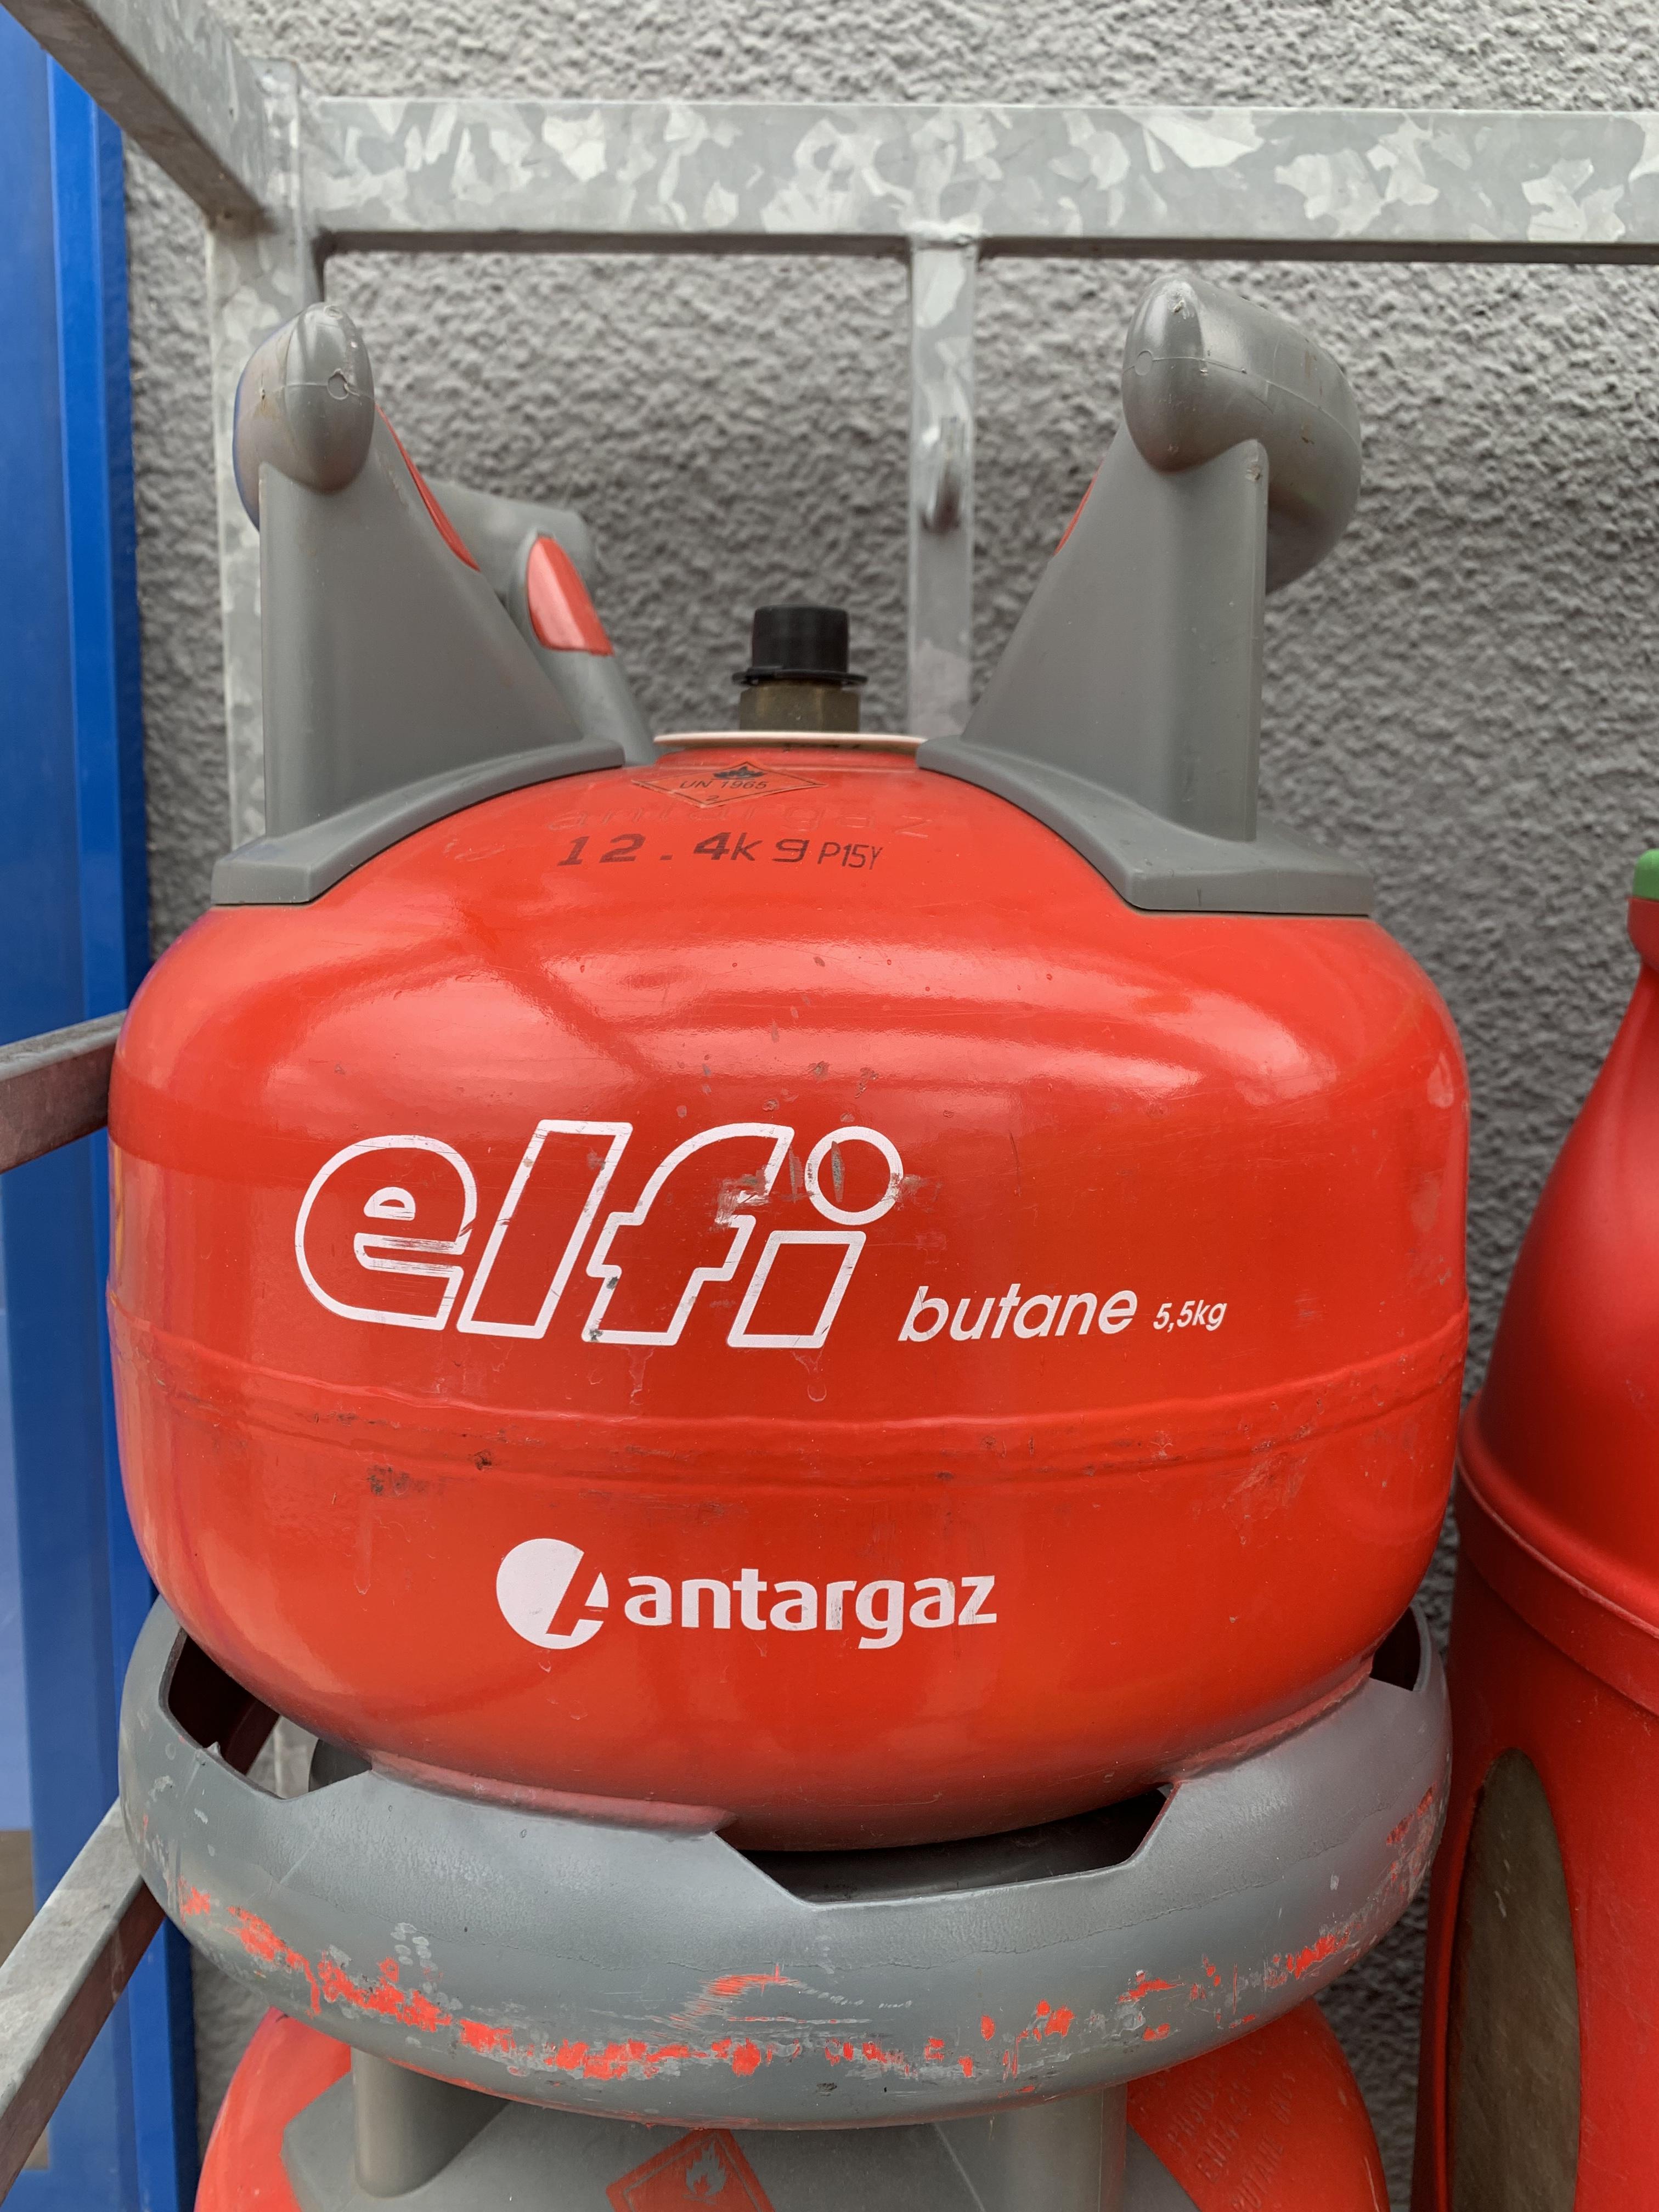 BOUTEILLE DE GAZ BUTANE ELFI 5.5 KG - ANTARGAZ